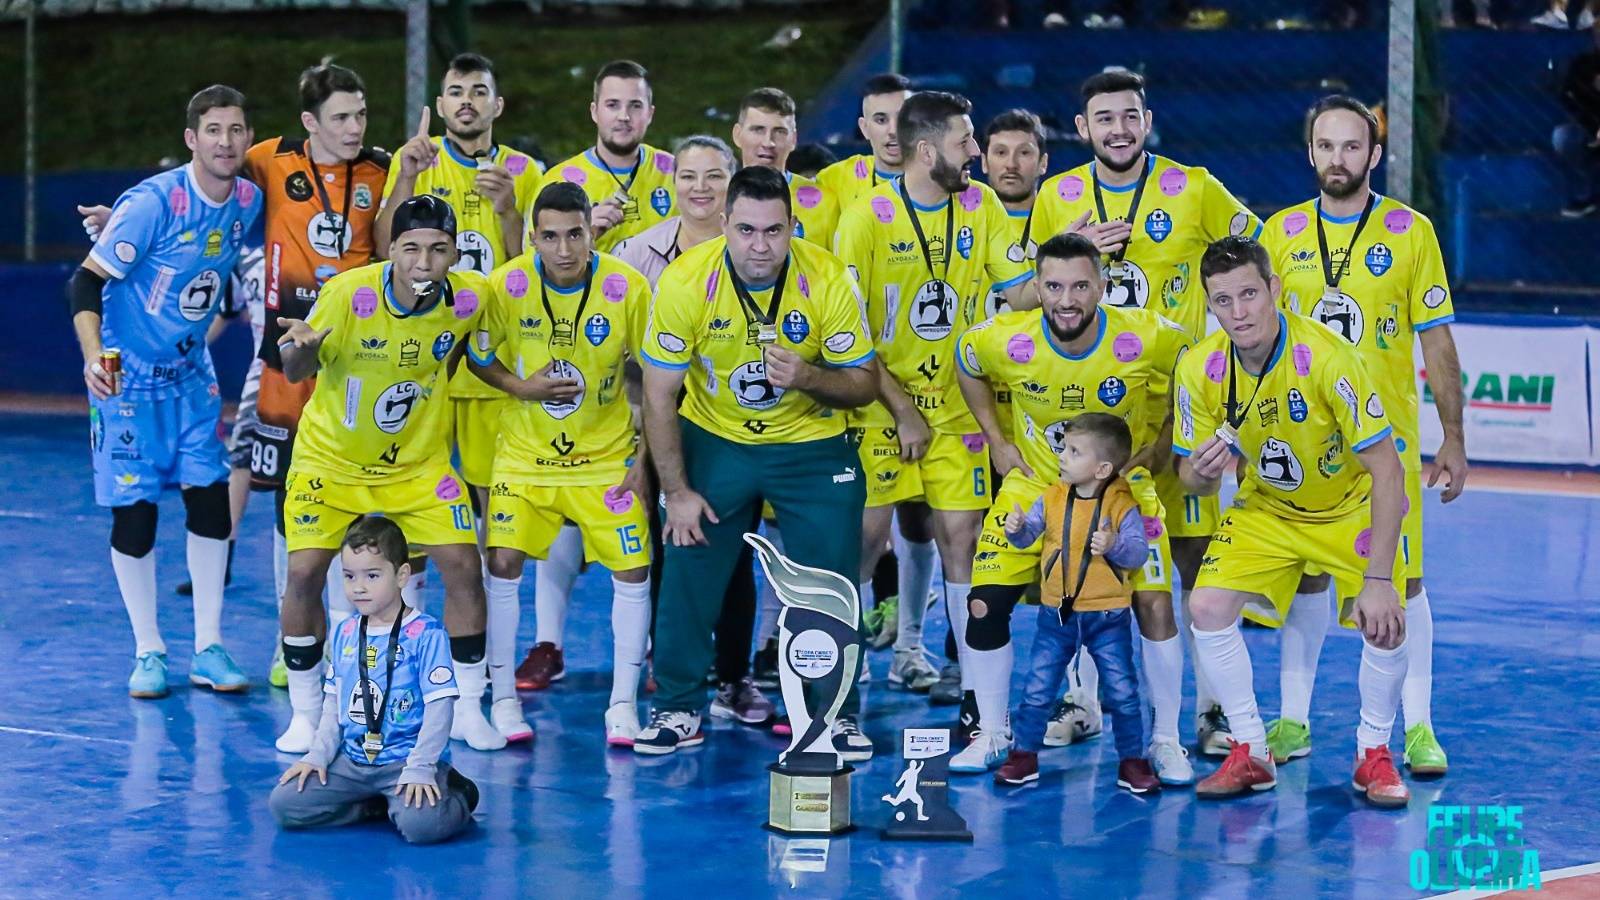 Ibema conquista o título da Copa Floresta de Futsal em disputa épica nos pênaltis